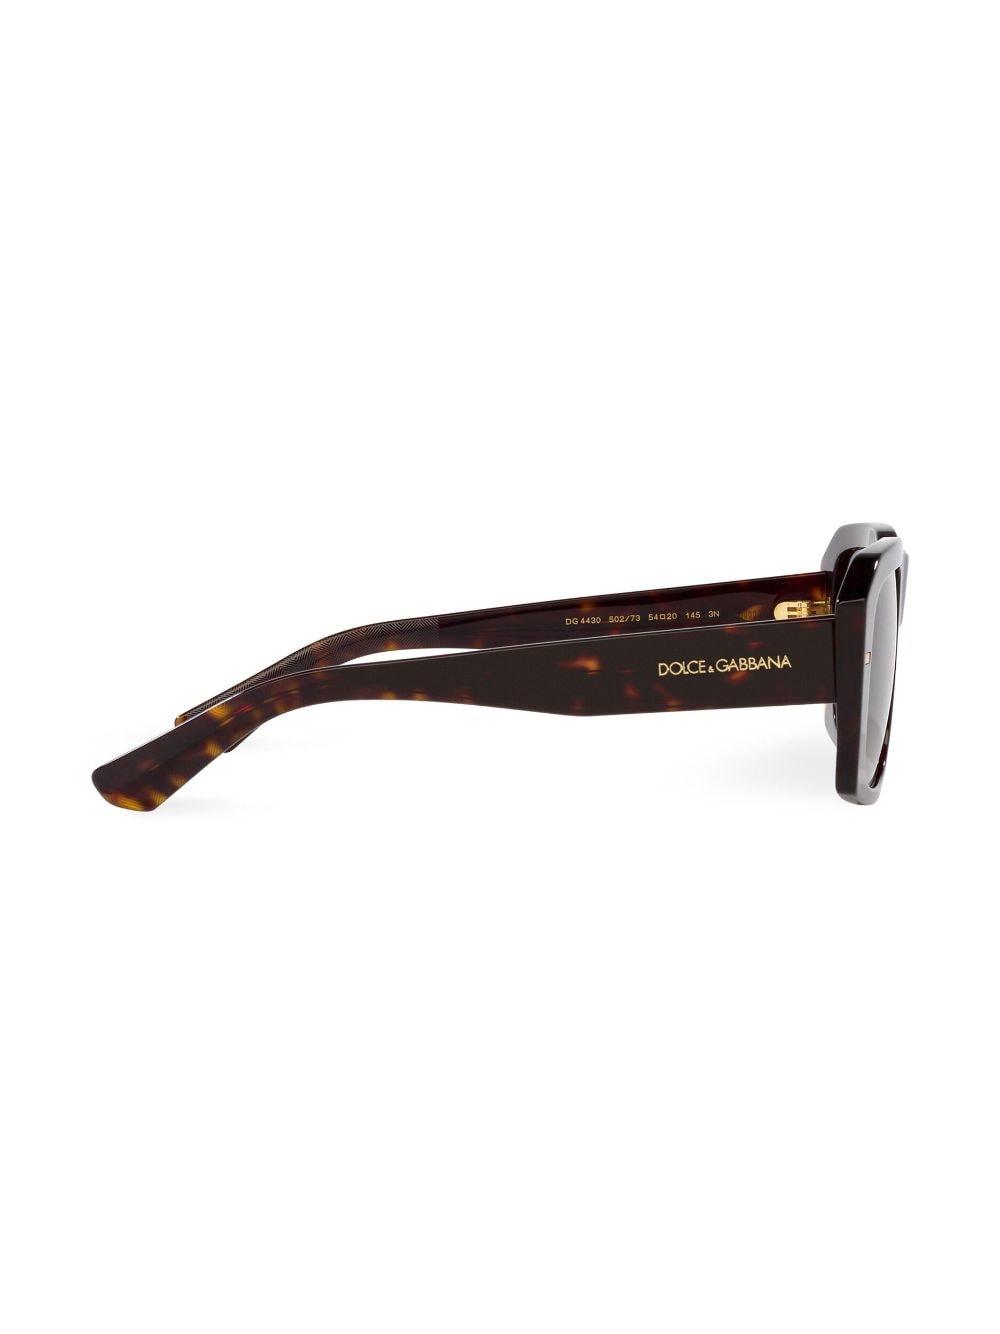 Dolce & Gabbana Eyewear Tortoiseshell Rectangular Sunglasses - Brown